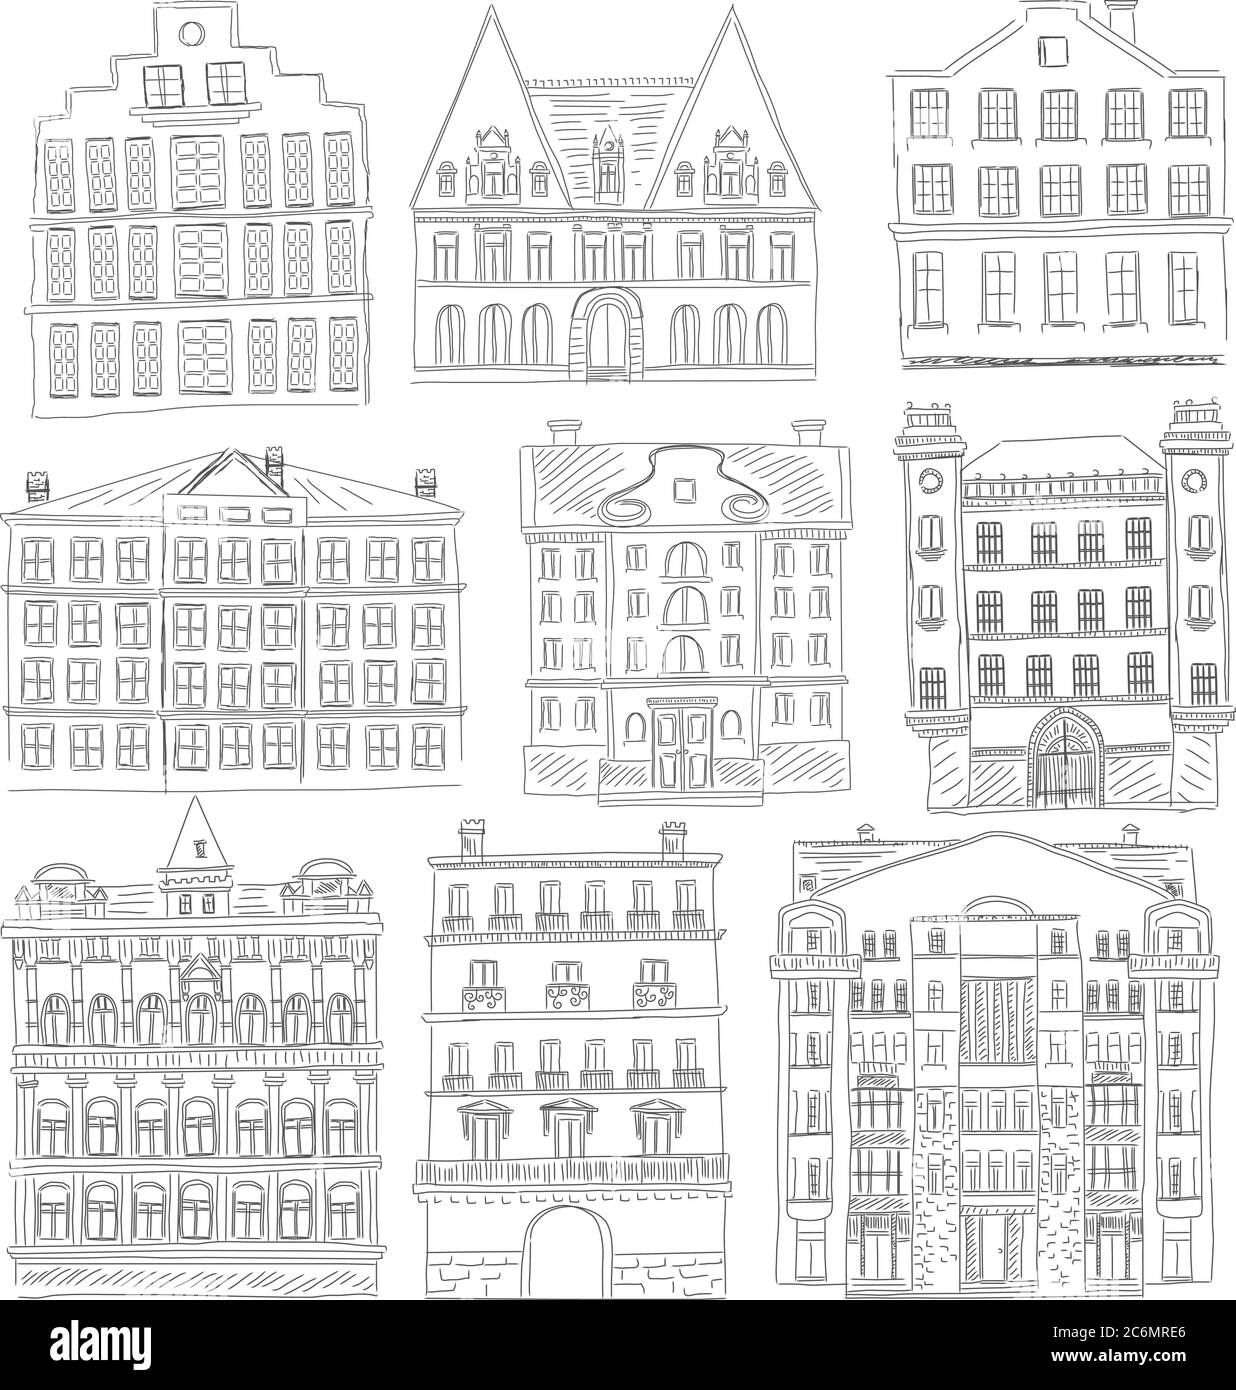 Edifici storici di vecchia linea stile. Profilo vecchio edificio della città isolato set. Schizzo di disegno architettonico manuale Illustrazione Vettoriale